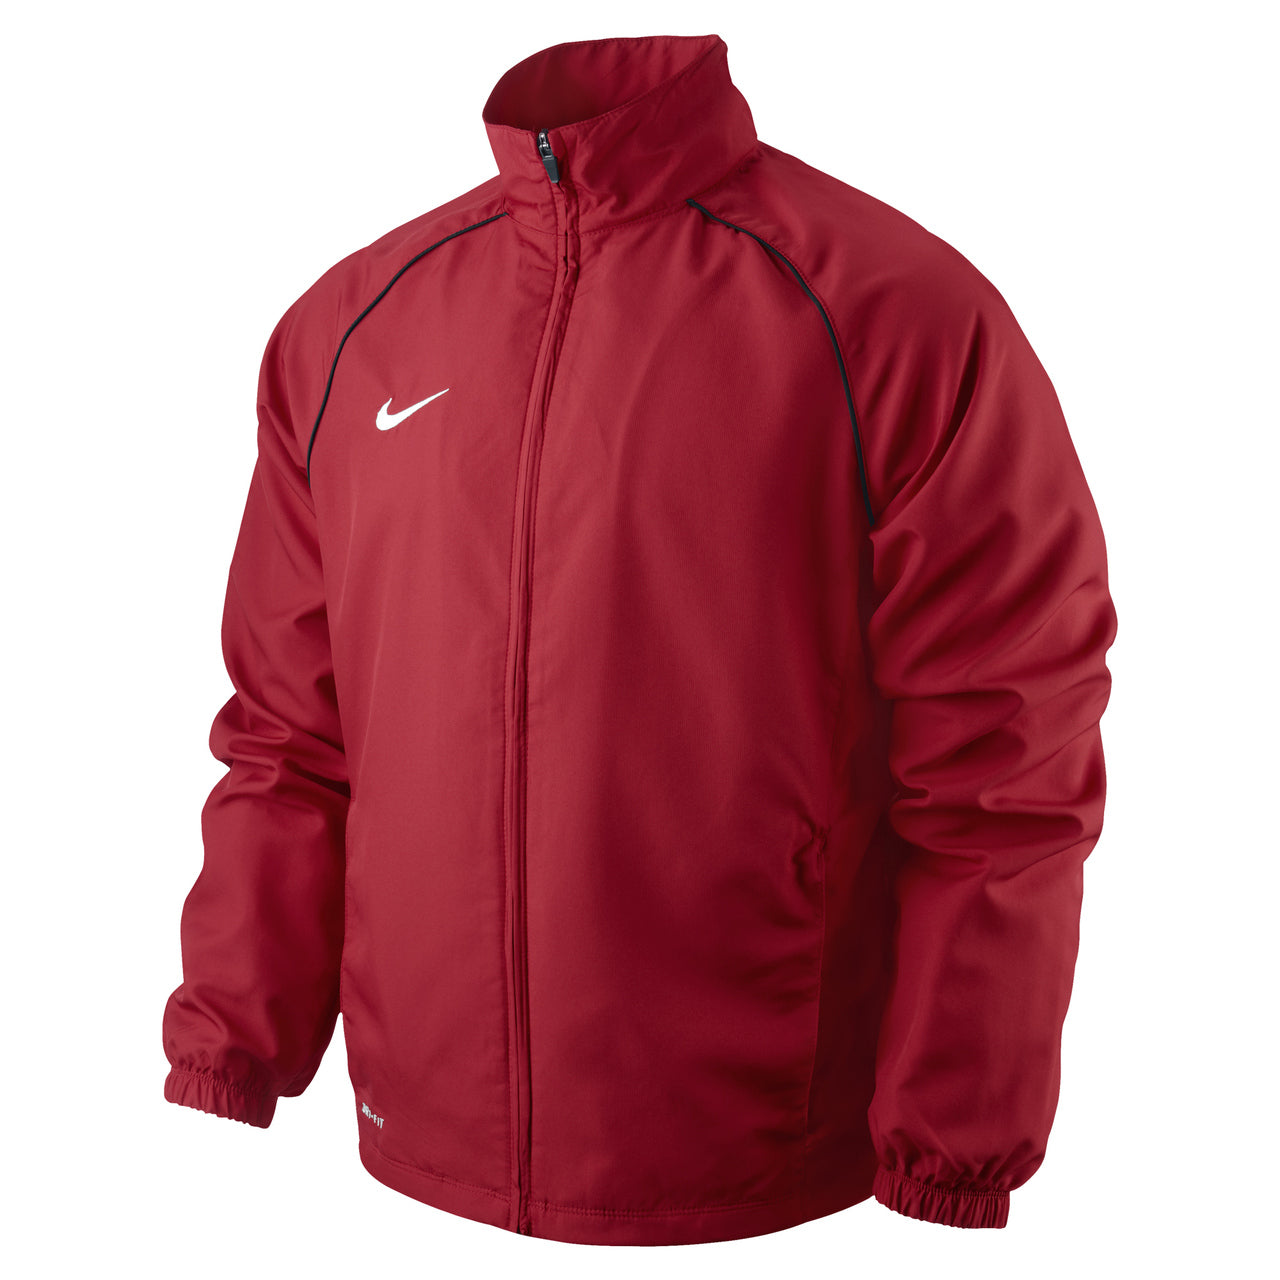 Nike Foundation Sideline Jacket